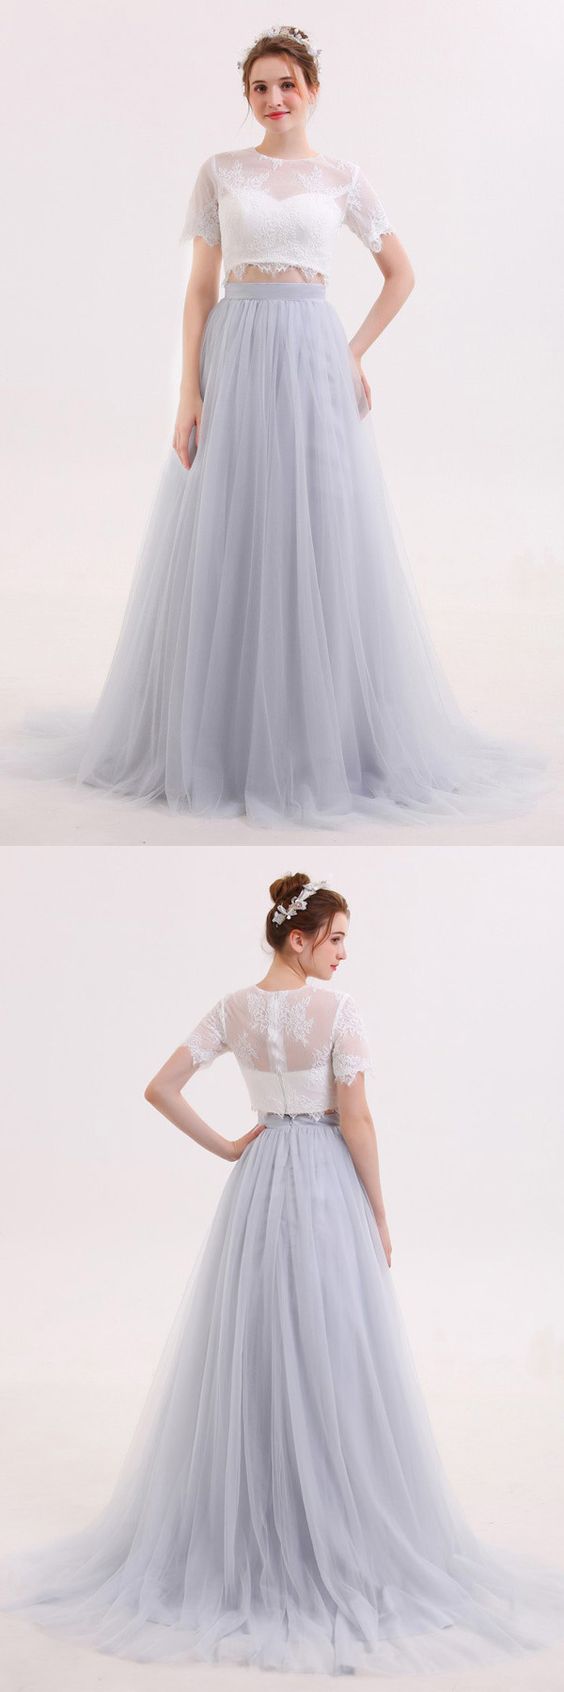 crop top and skirt wedding dress